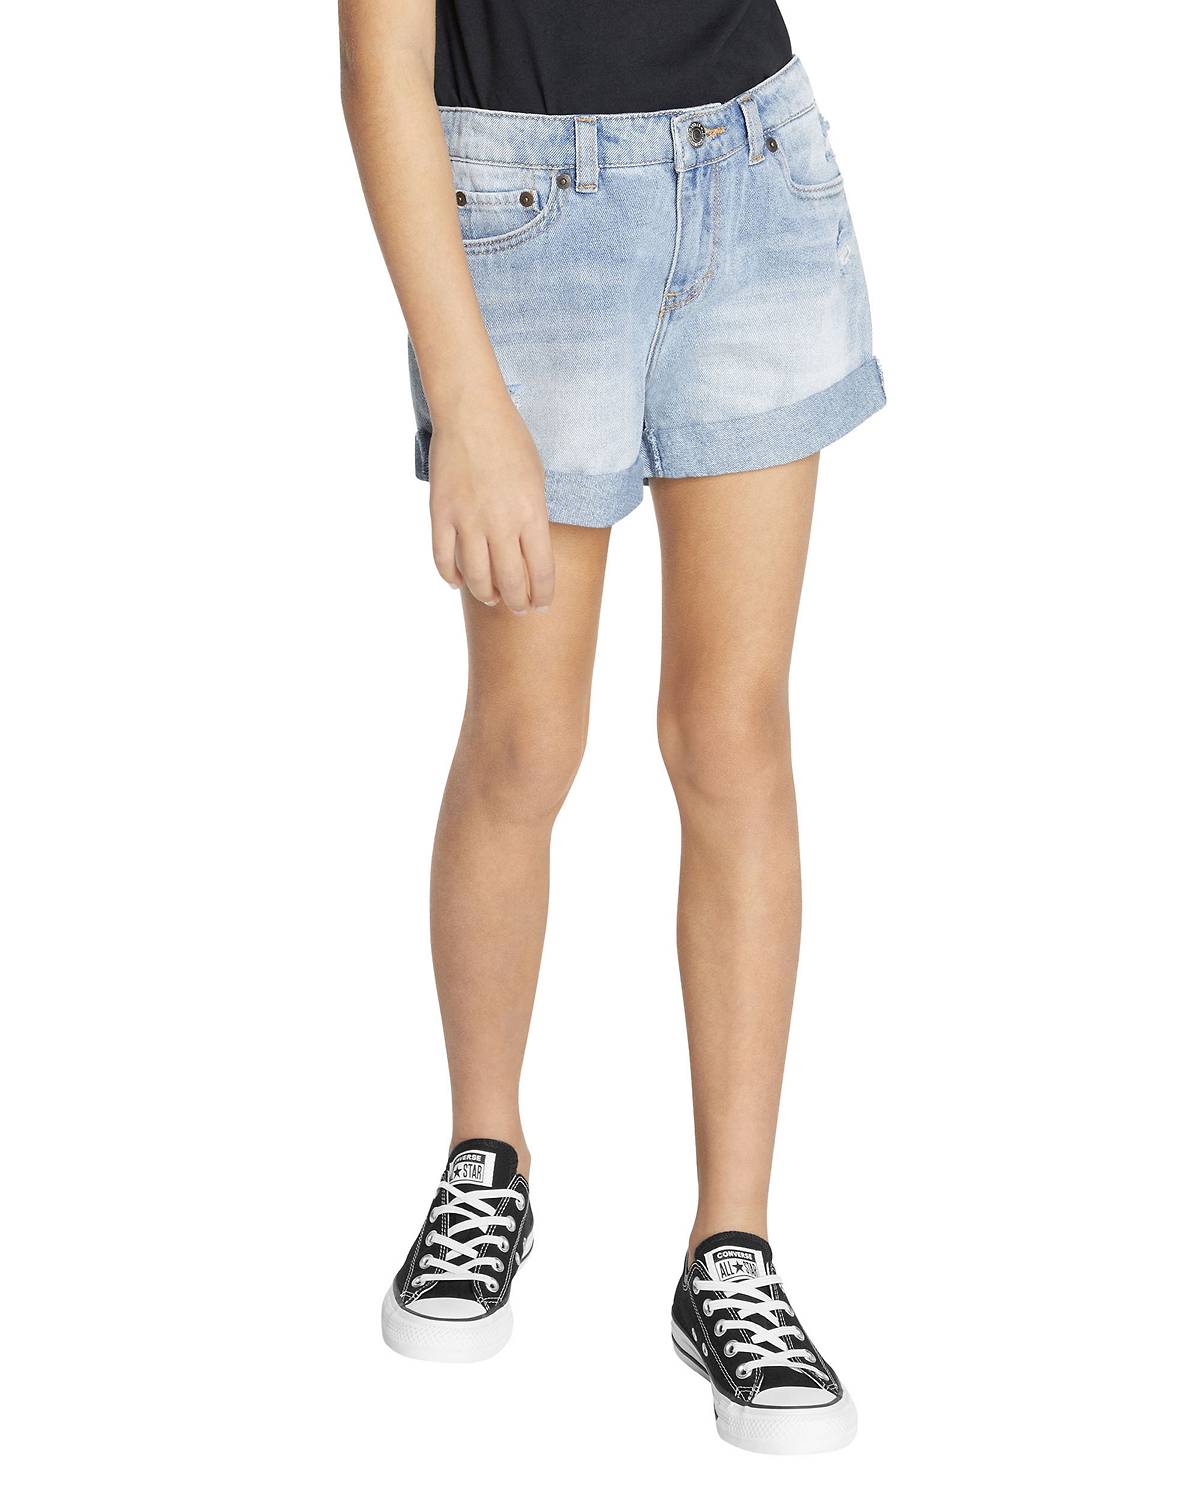 Girl wearing cuffed light wash shorts